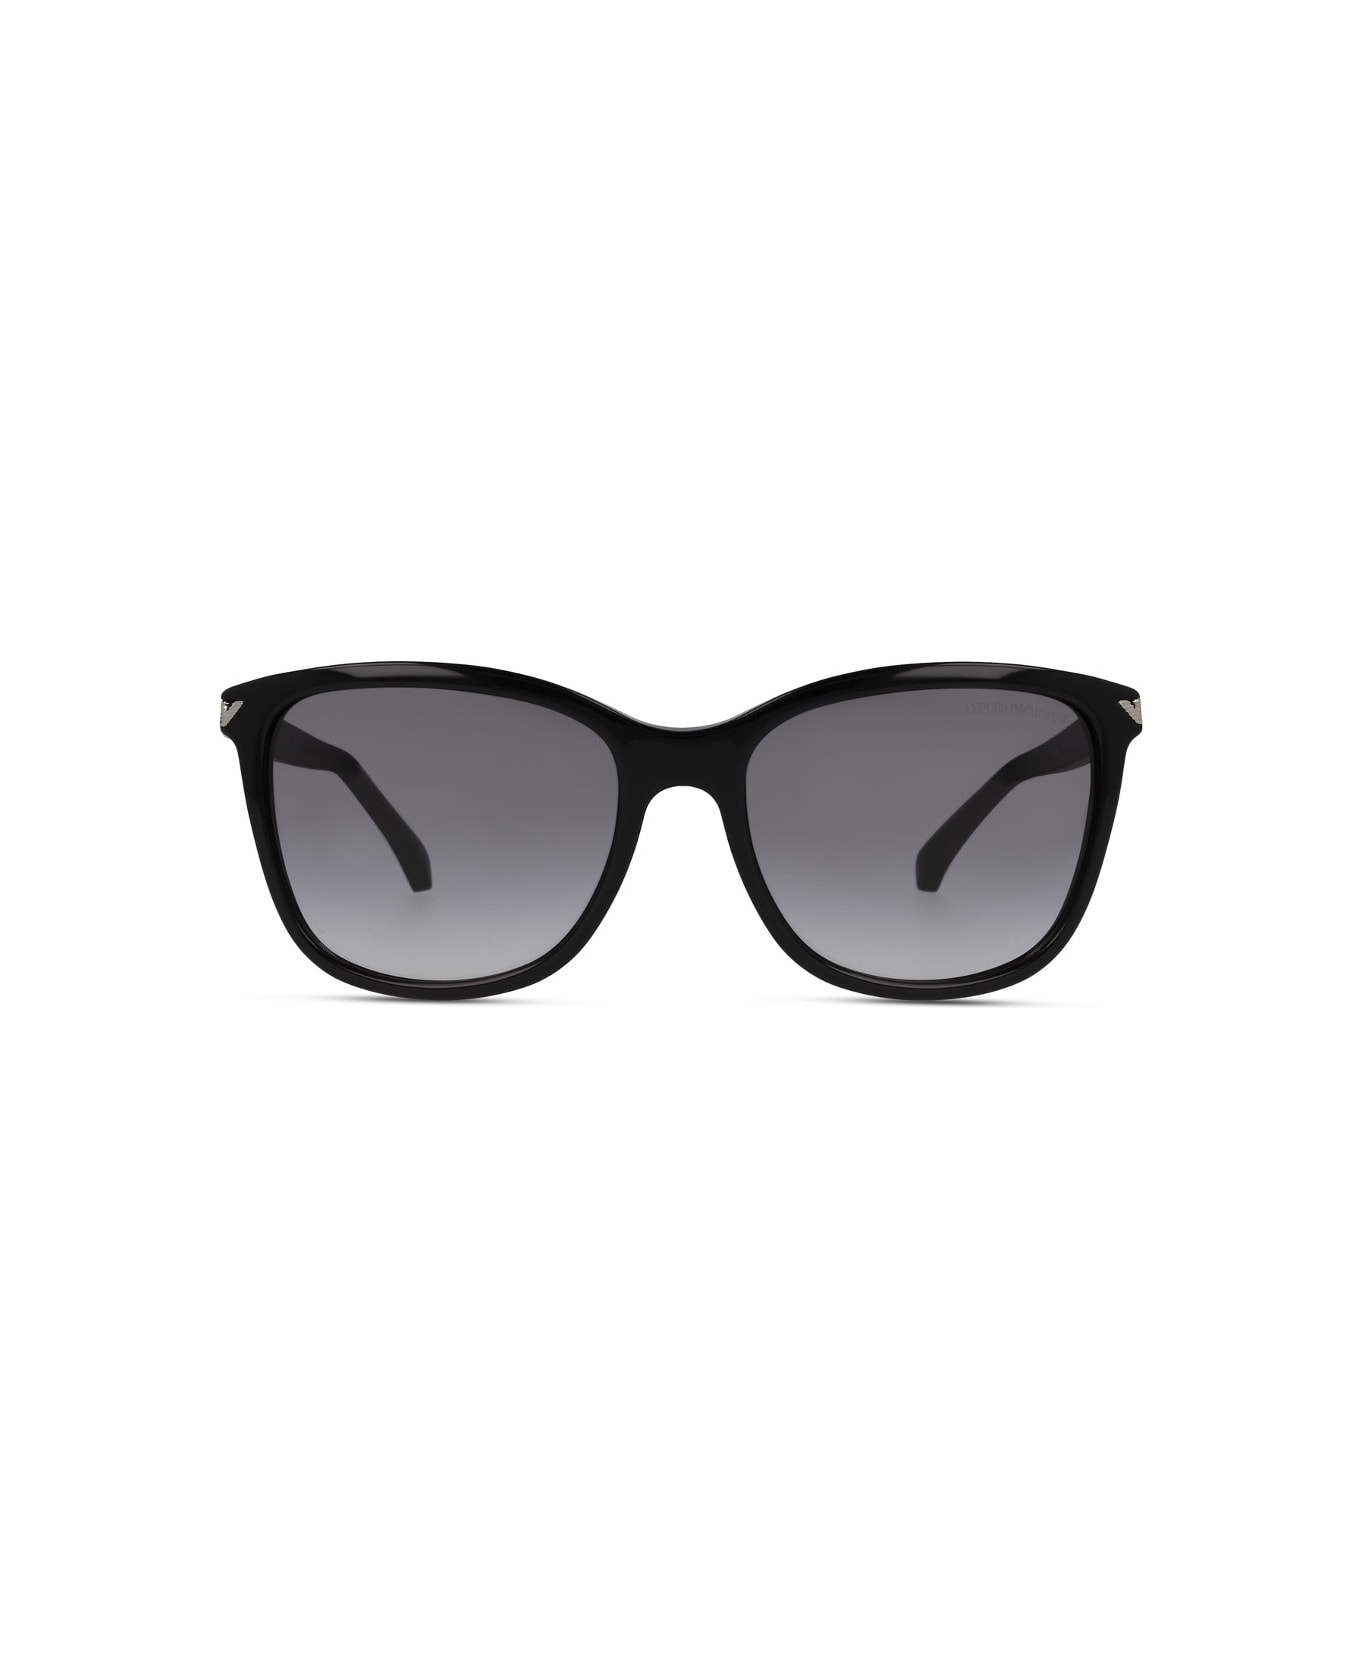 Emporio Armani EA4060 5017/8G Sunglasses